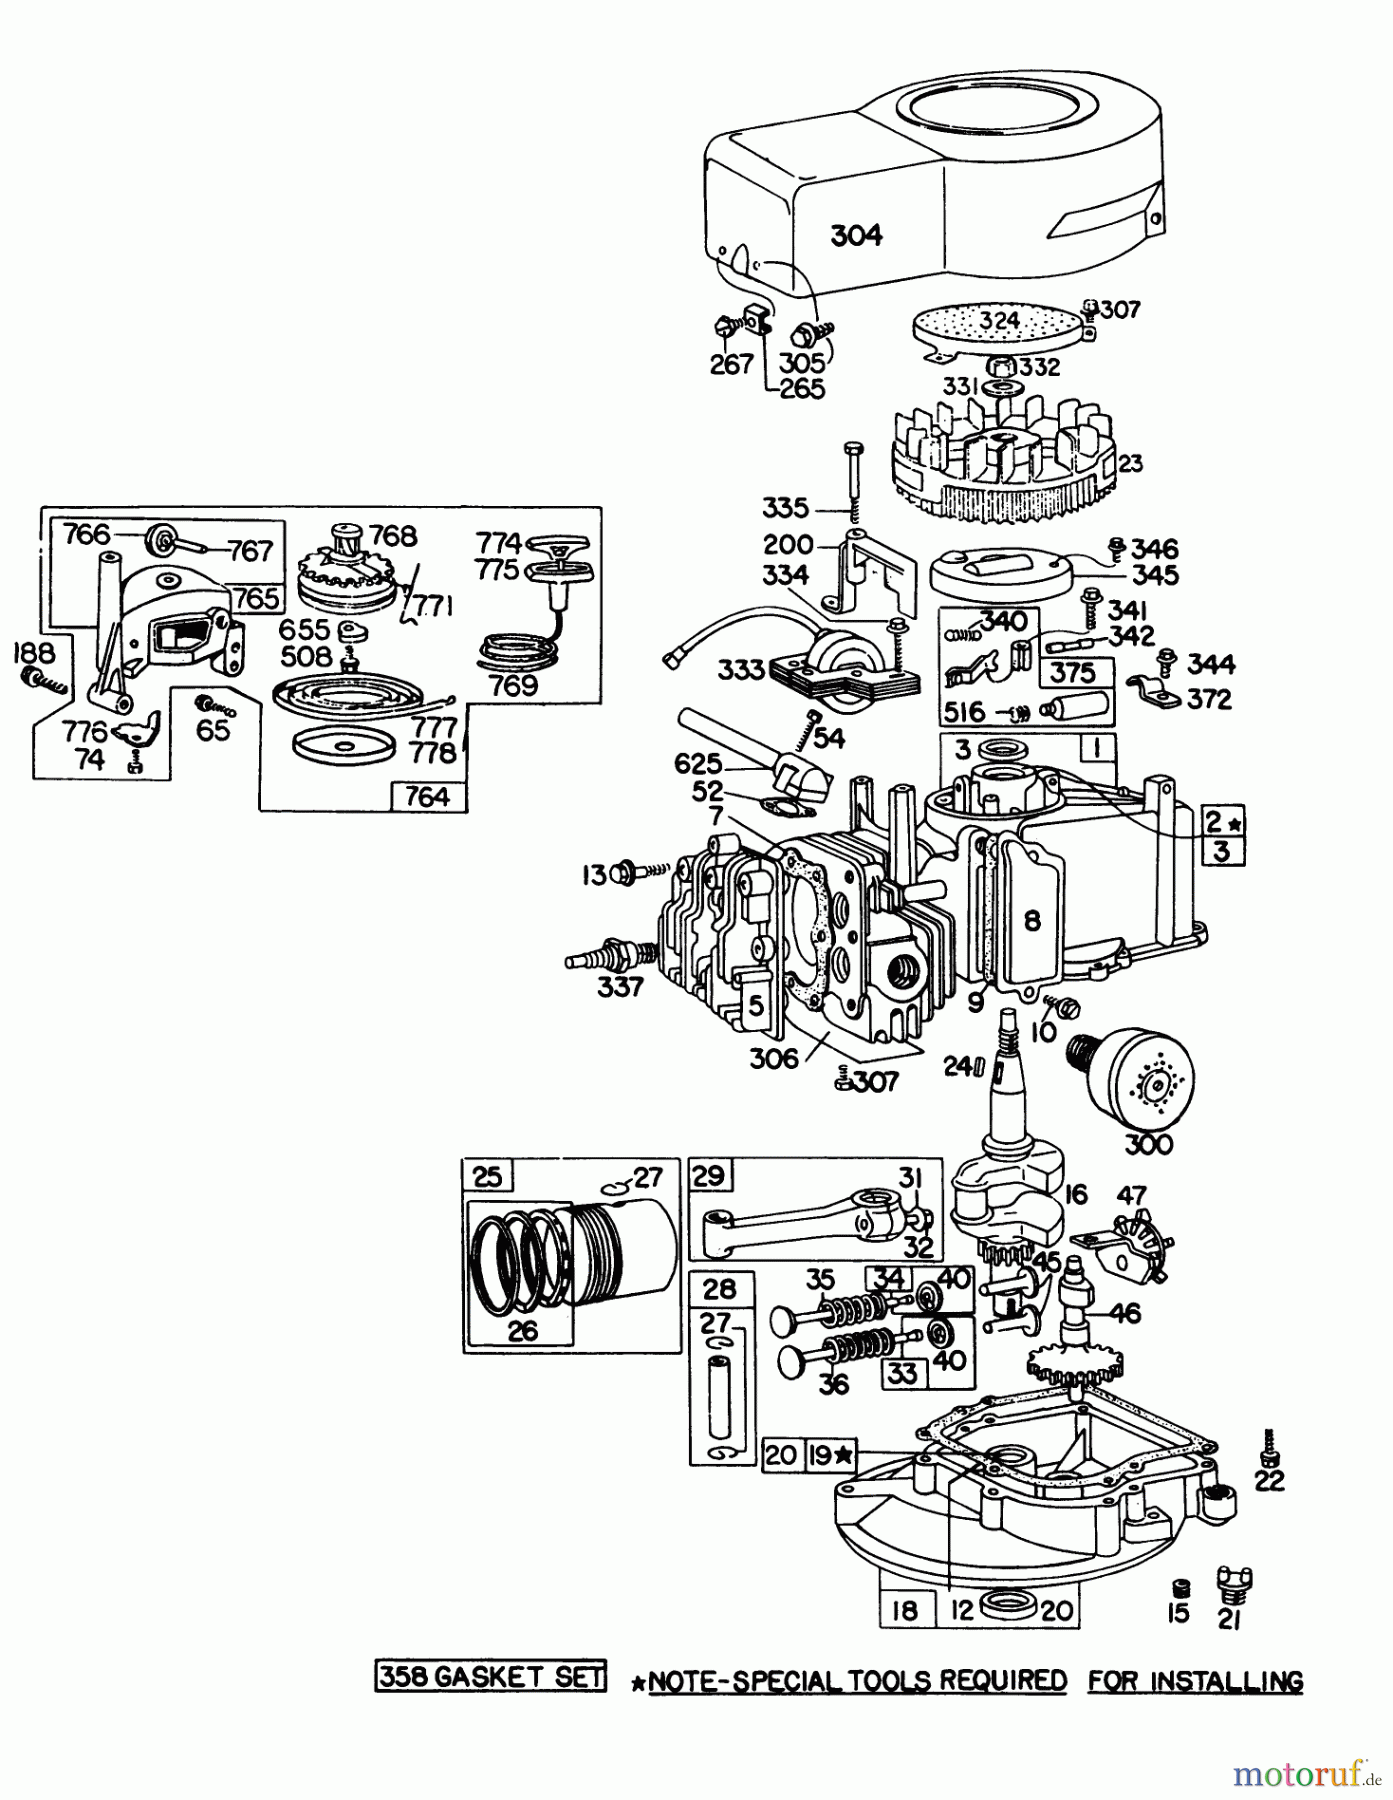  Toro Neu Mowers, Walk-Behind Seite 1 16009 - Toro Whirlwind II Lawnmower, 1978 (8000001-8999999) ENGINE BRIGGS & STRATTON MODEL 92908-1743-01 FOR 21